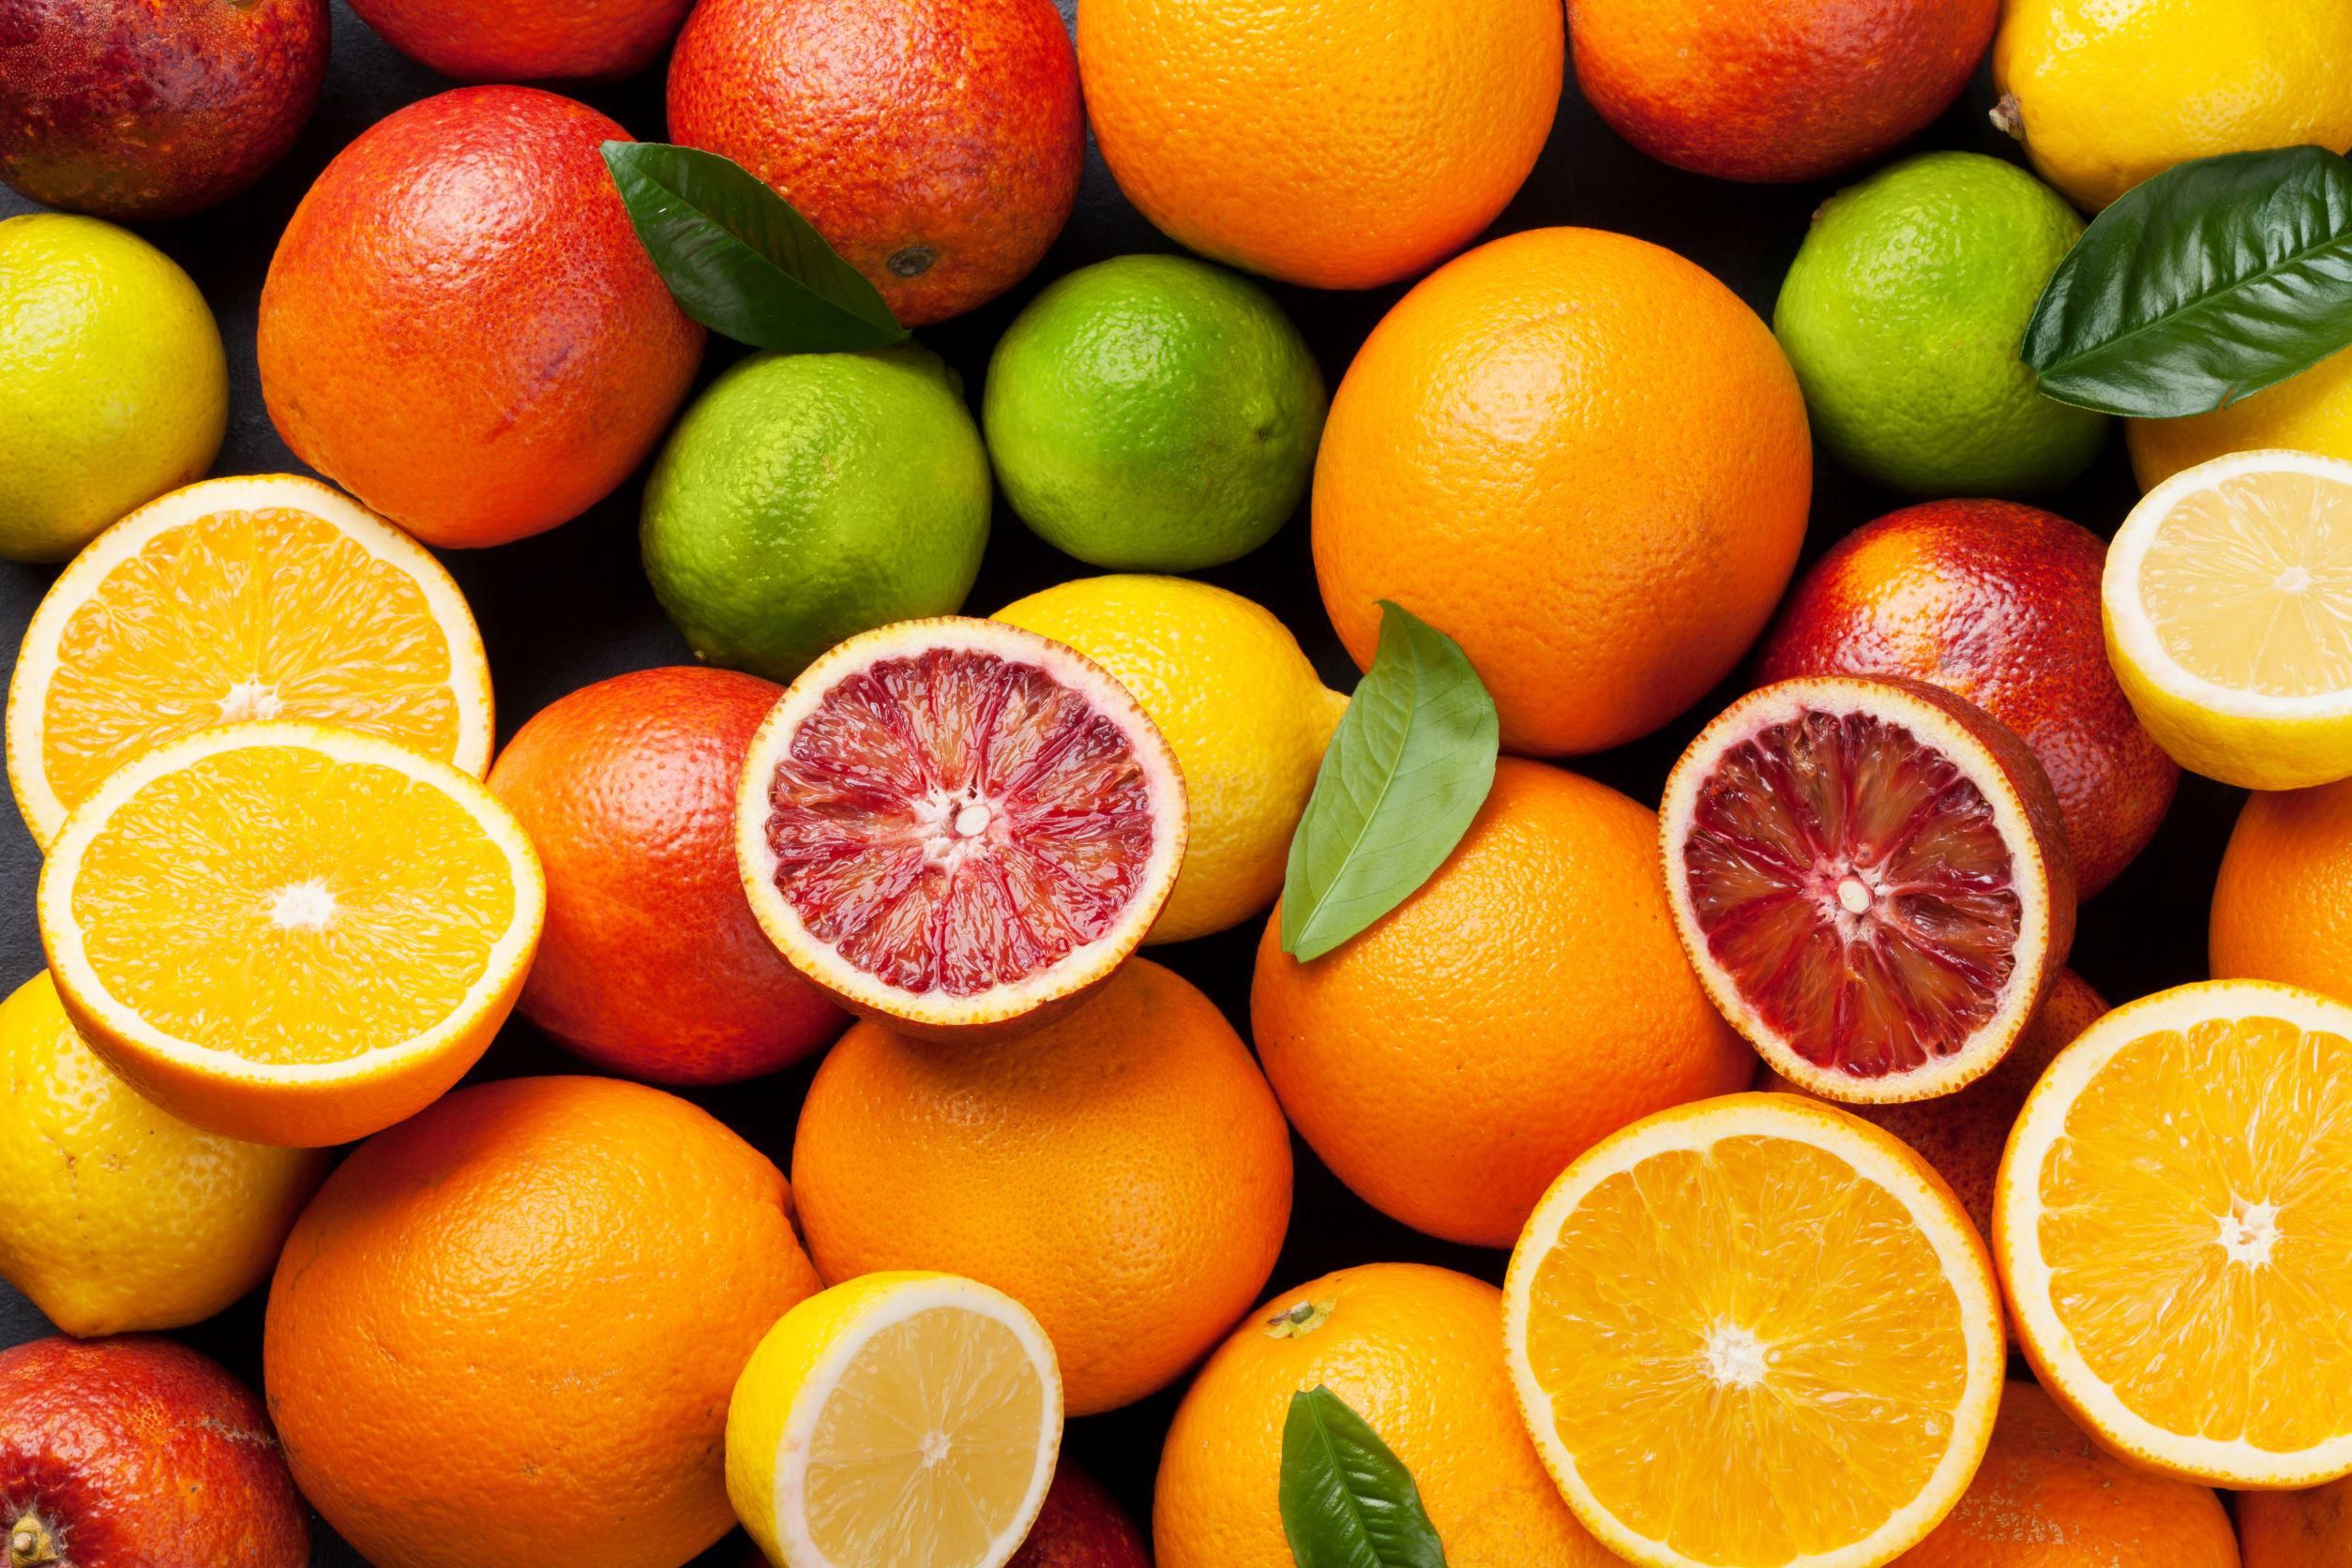 Citrusfélék egy tálcán, citrom, narancs, vérnarancs